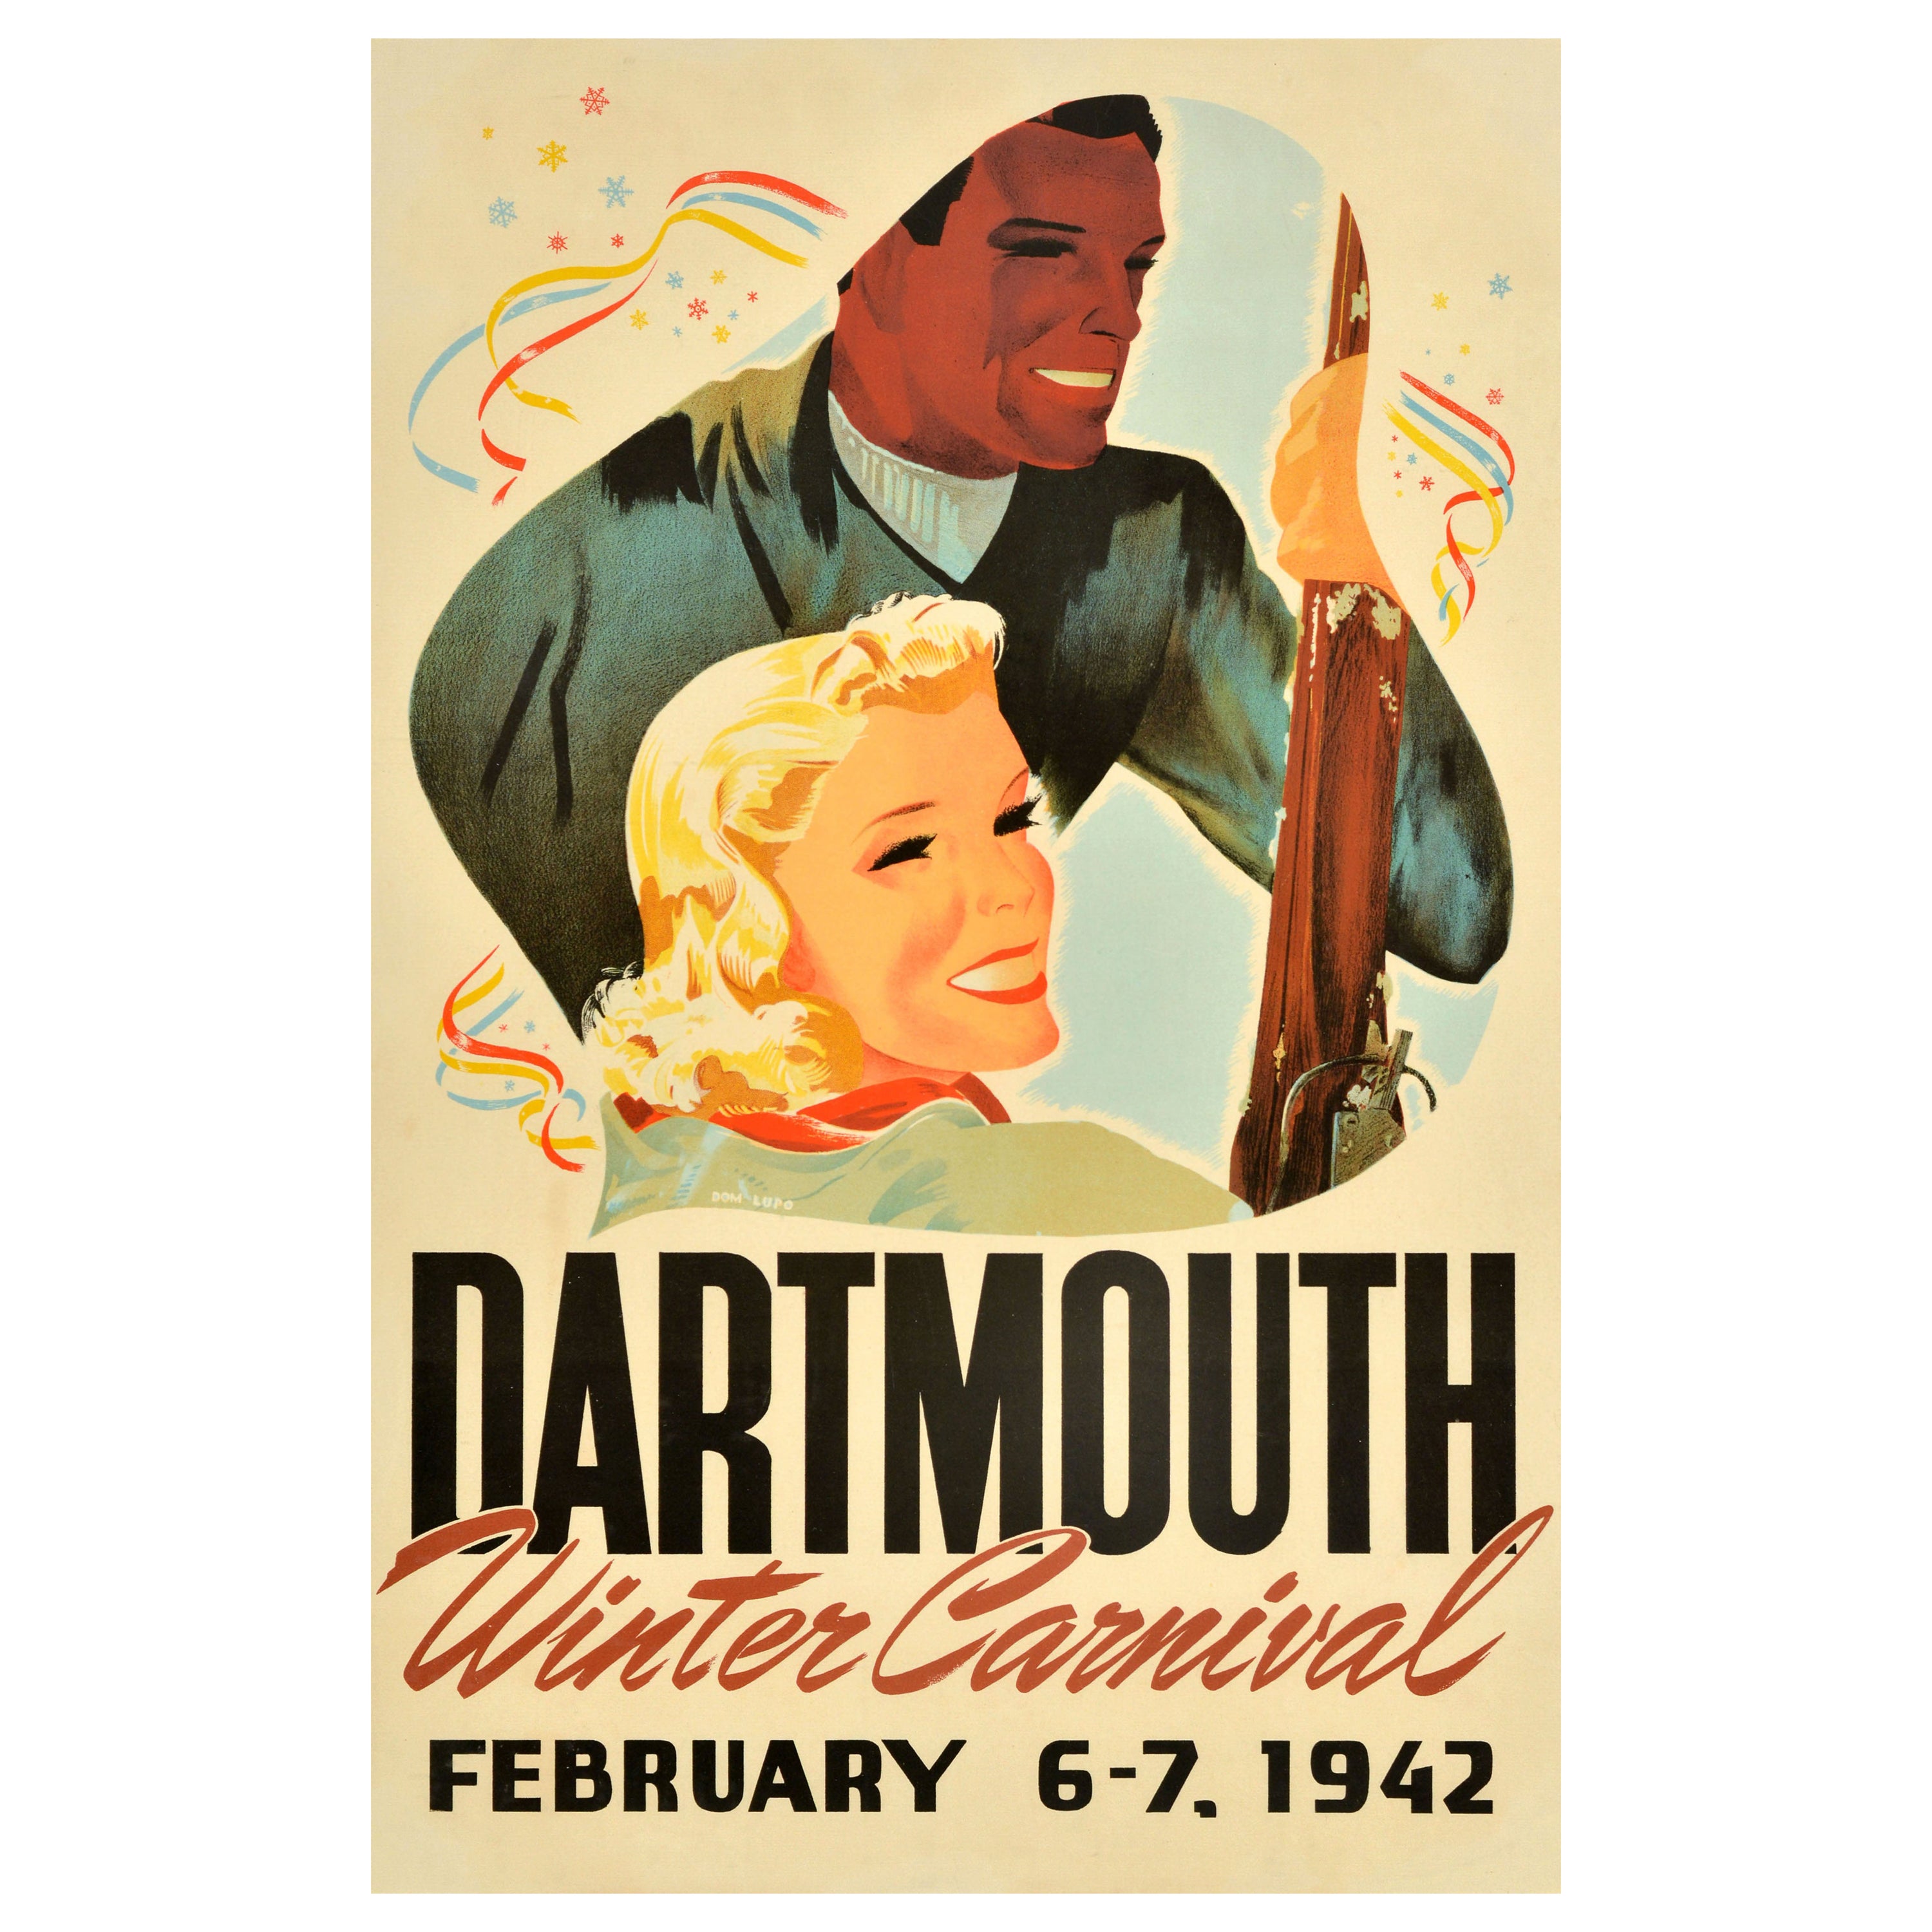 Affiche vintage originale de ski de Dartmouth, carnaval d'hiver 1942, États-Unis